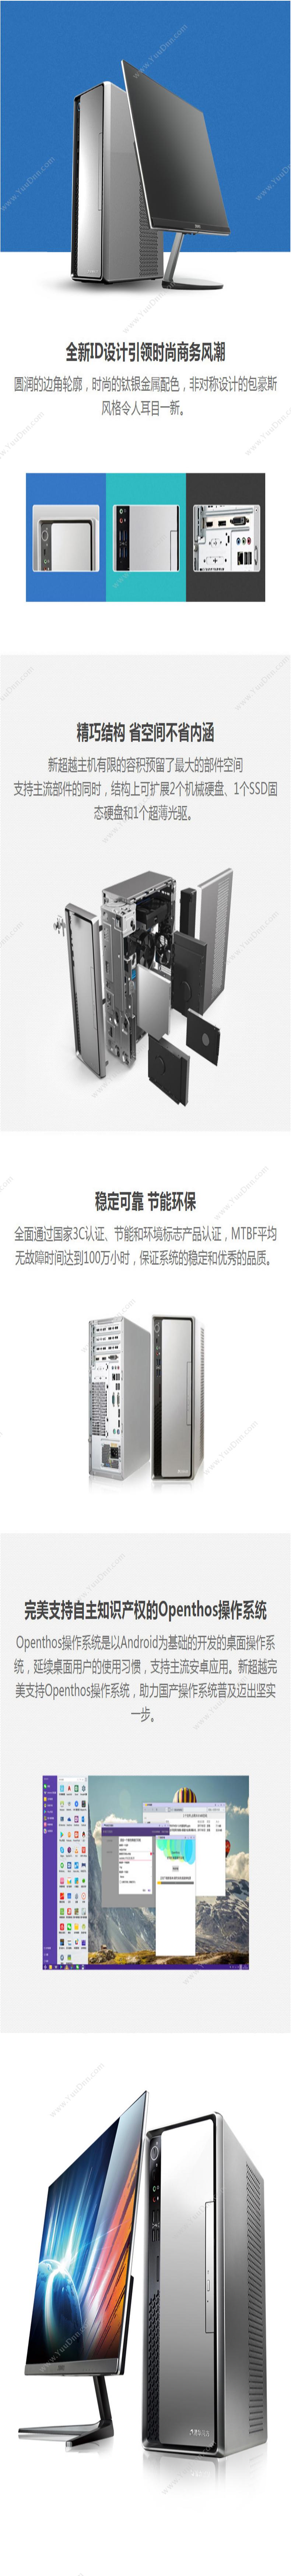 清华同方 TongFang 超扬A8500-0025(19.5寸显示器） 台式机 台式电脑套机